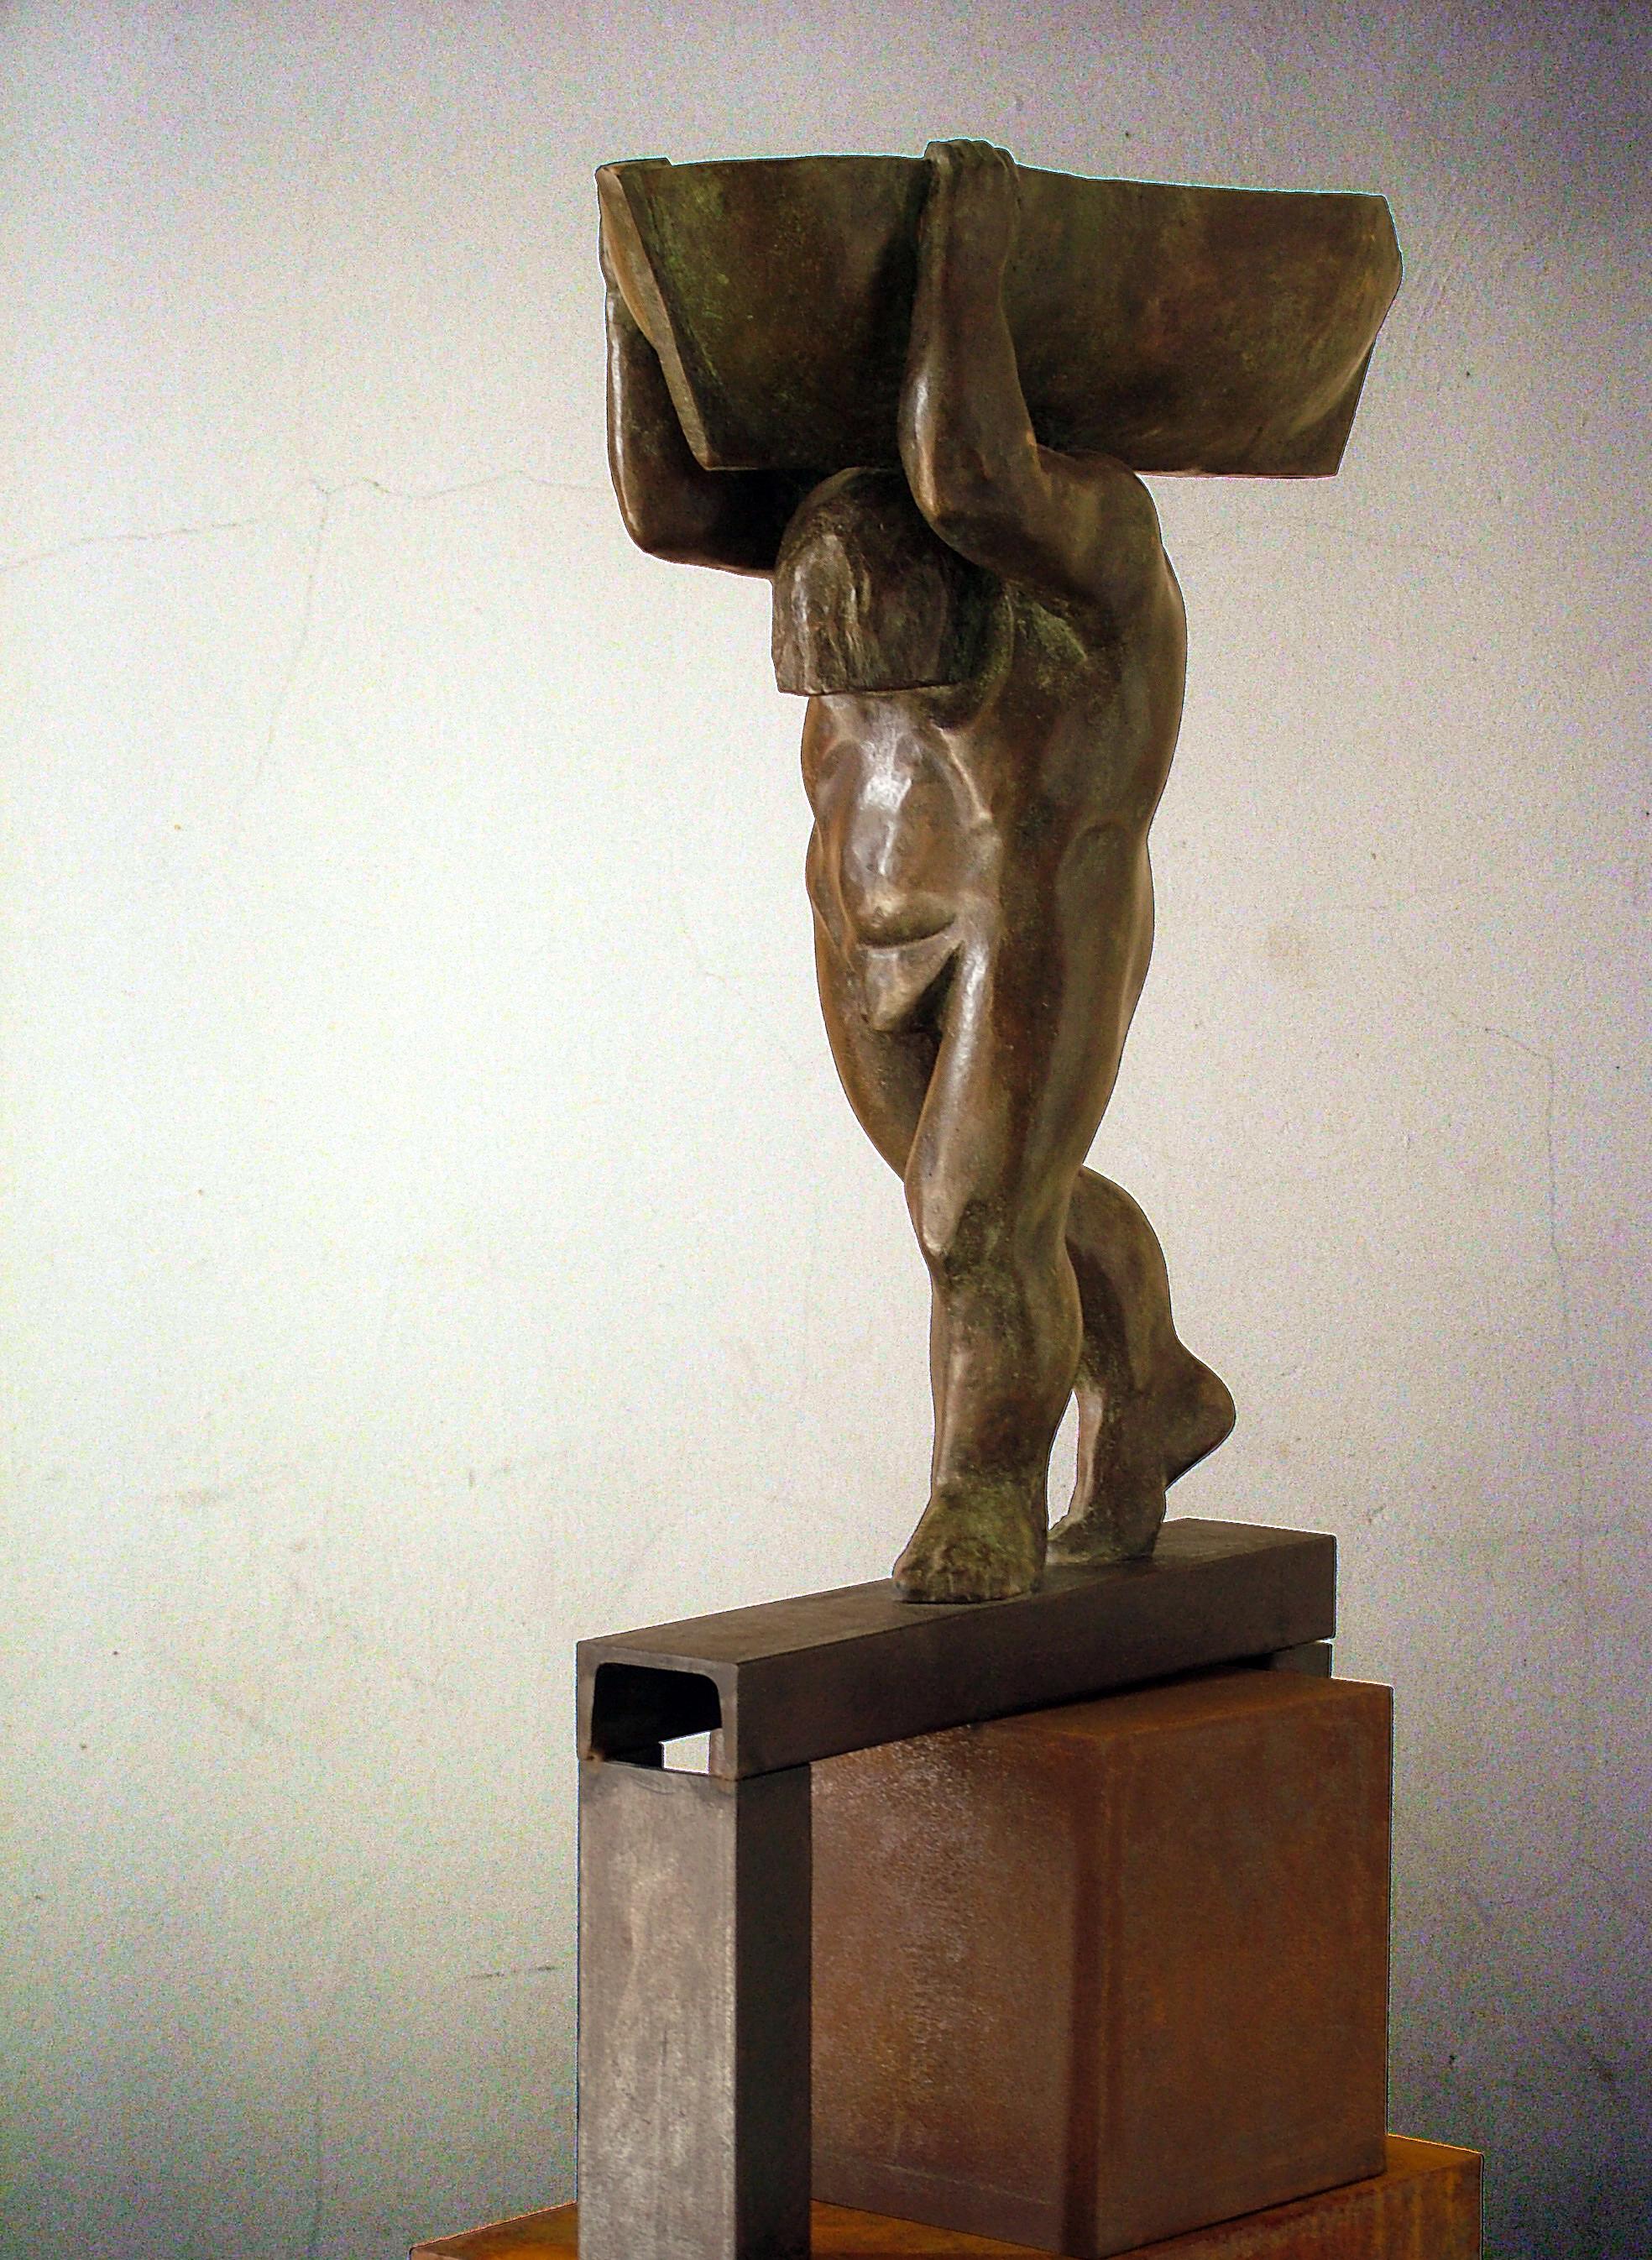 Escultura del artista español AMANCIO GONZALEZ
Artista muy conocido por sus obras de gran formato en la calle.
Hierro y bronce 7 ejemplares
AMANCIO González ( León 1965 )

Amancio González es un escultor leonés y un artista celebrado